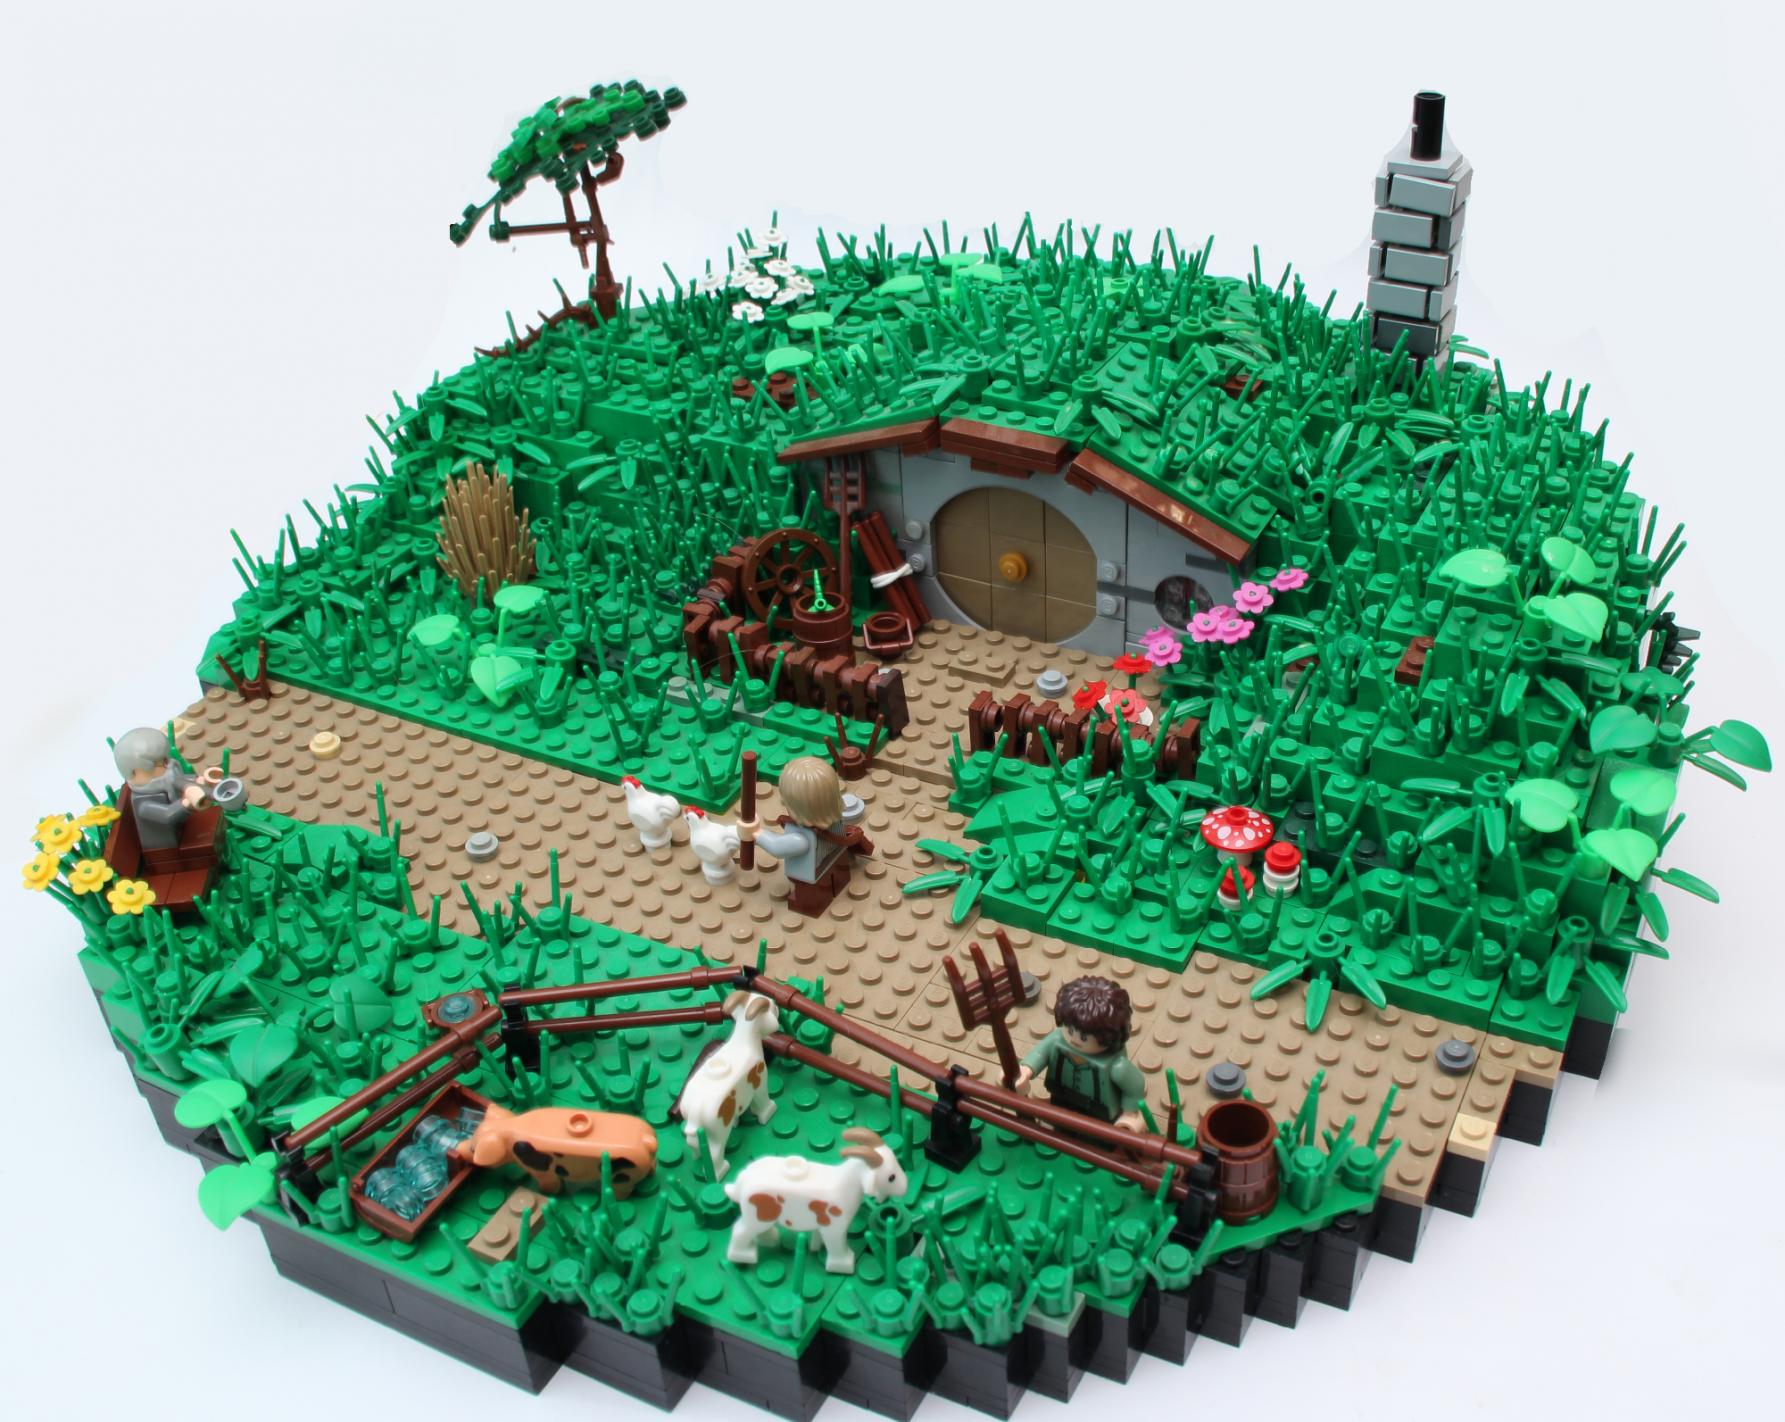 hobbit-hole-lego-build